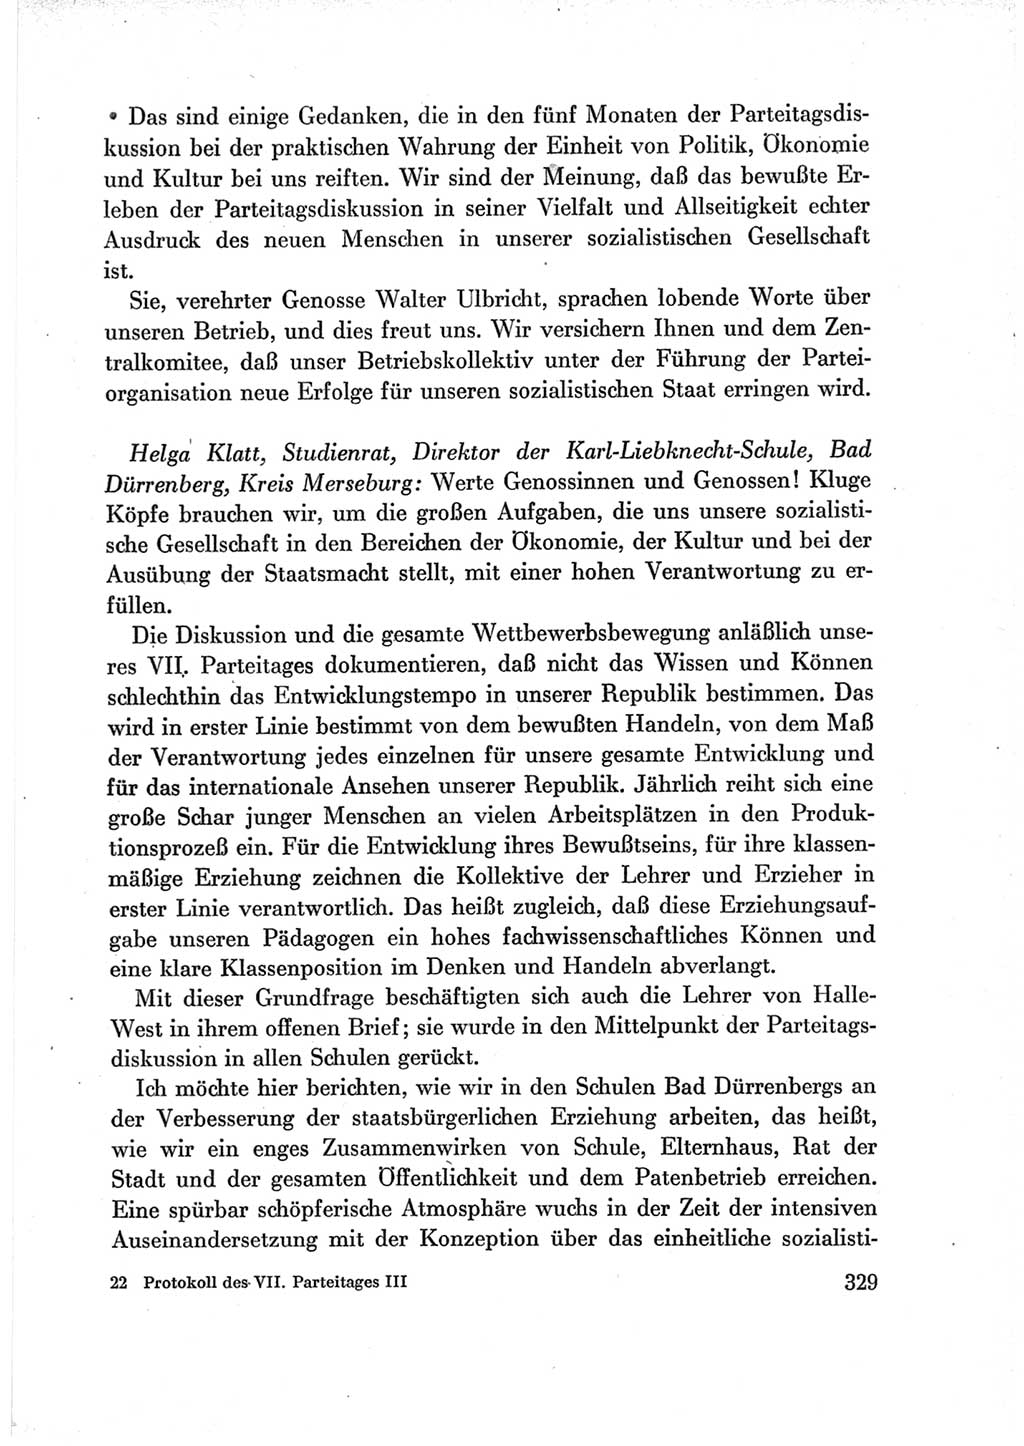 Protokoll der Verhandlungen des Ⅶ. Parteitages der Sozialistischen Einheitspartei Deutschlands (SED) [Deutsche Demokratische Republik (DDR)] 1967, Band Ⅲ, Seite 329 (Prot. Verh. Ⅶ. PT SED DDR 1967, Bd. Ⅲ, S. 329)